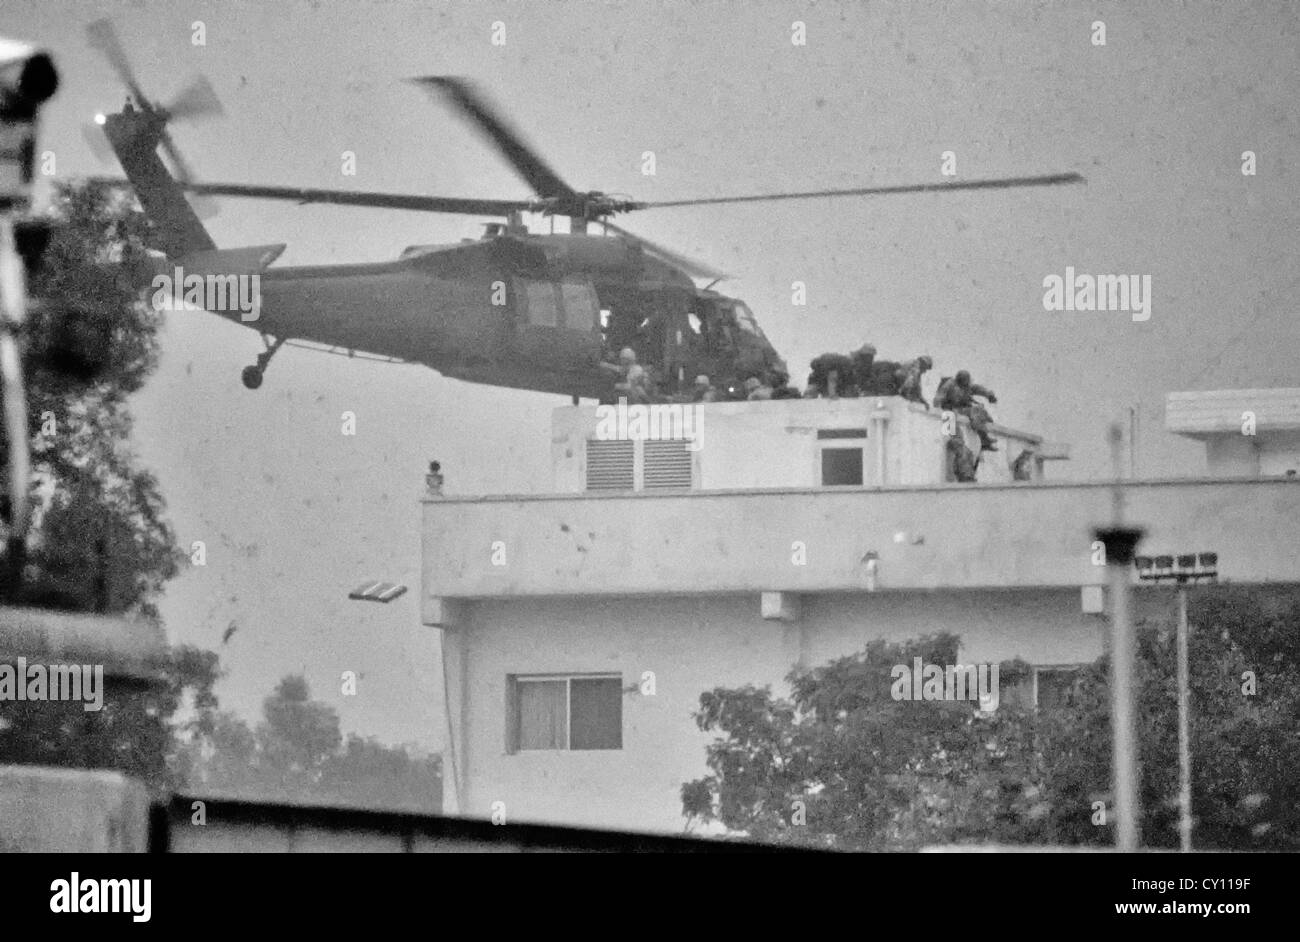 Les forces spéciales des États-Unis sautent d'un hélicoptère Blackhawk sur le toit de l'ambassade des États-Unis alors qu'elles ont repris le bâtiment après la libération du pays de l'occupation irakienne lors de l'opération tempête du désert, à 28 février 1991, dans la ville du Koweït. Le ciel est obscurci par la fumée des feux de pétrole qui couvrent la ville. Banque D'Images